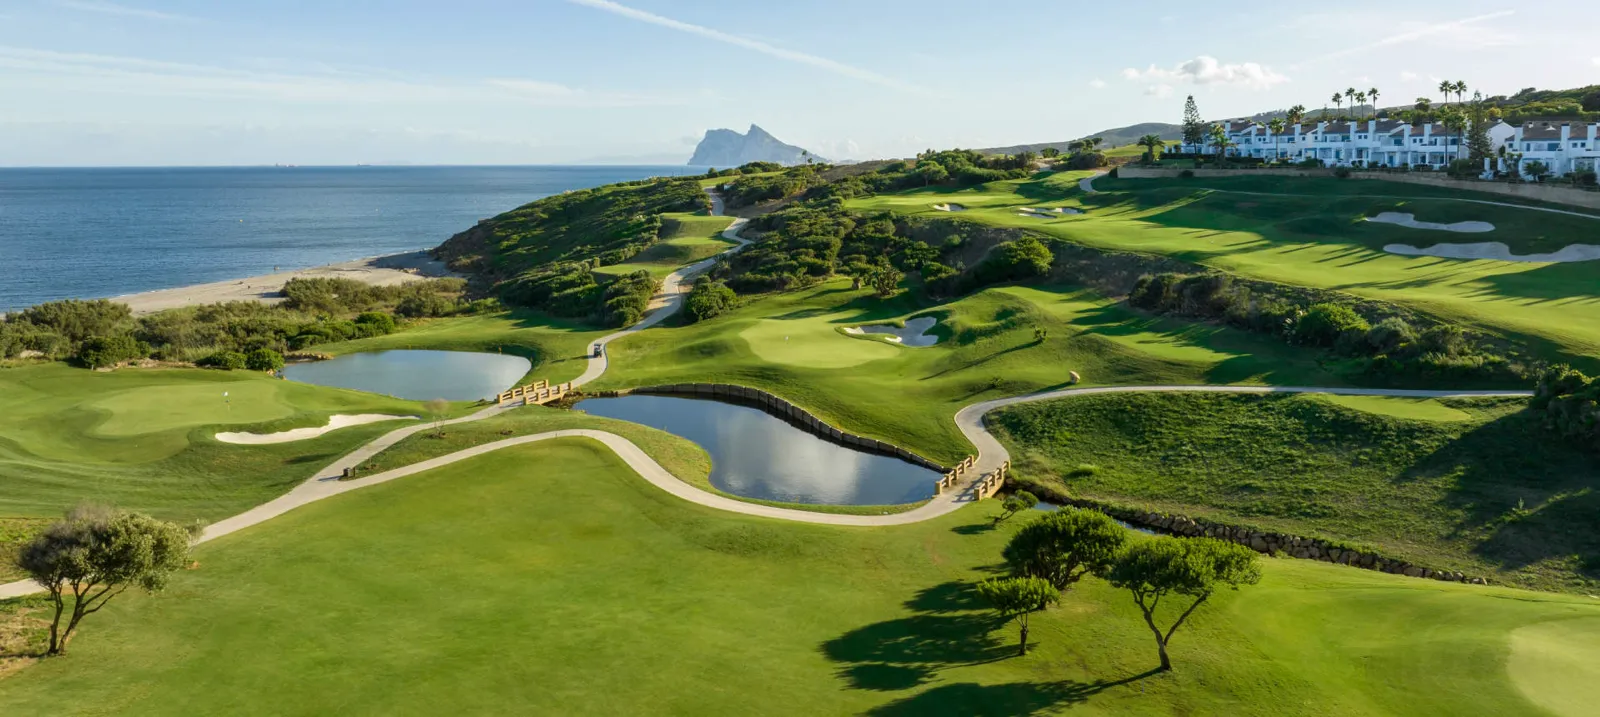 La Hacienda Links Golf Course